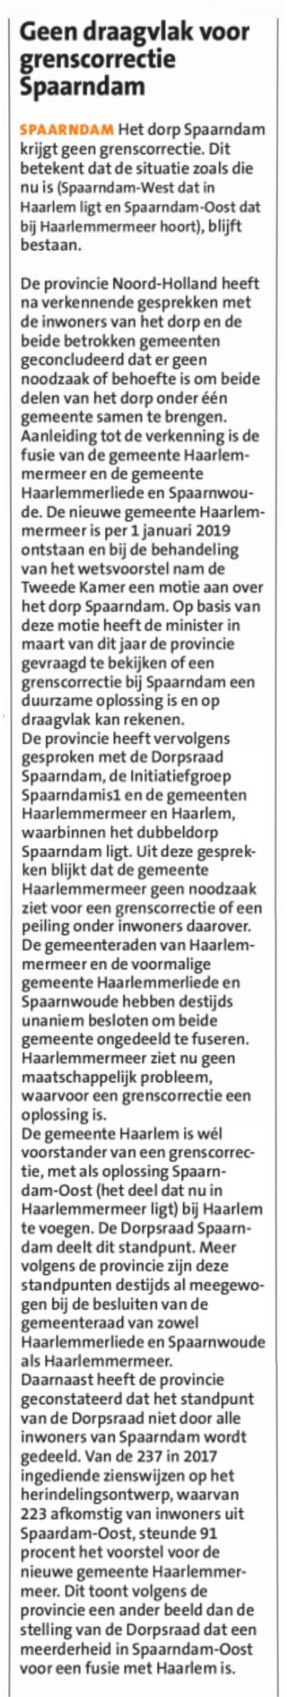 20190703-HCN Geen draagvlak voor grenscorrectie Spaarndam